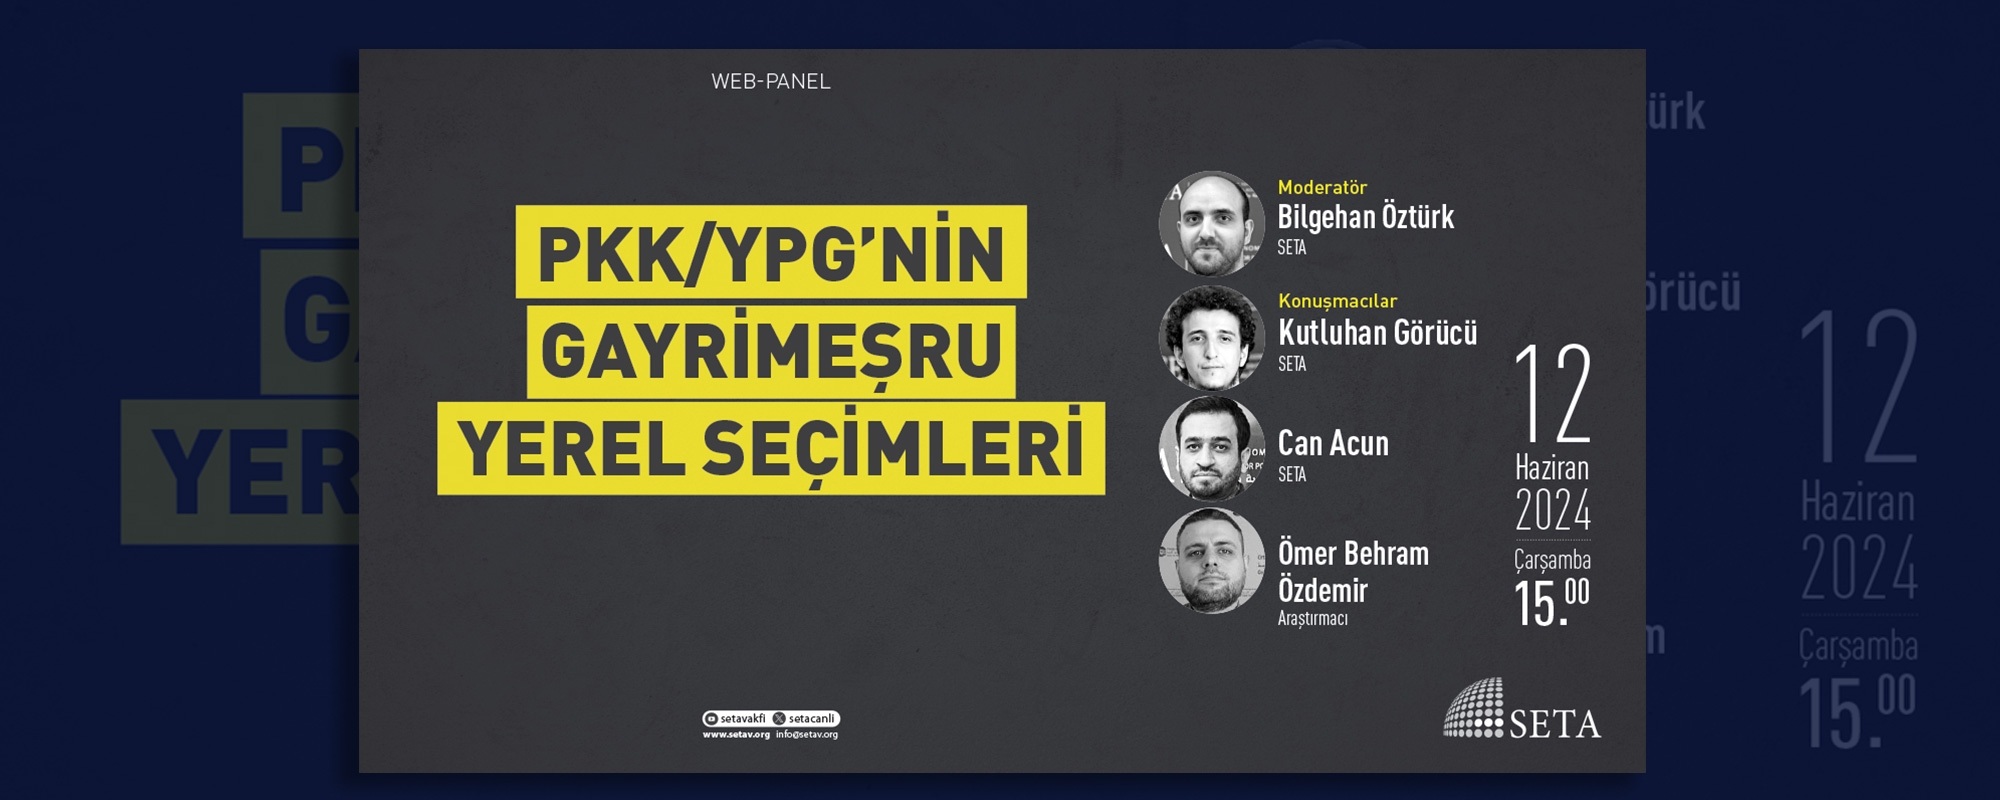 Web Panel PKK YPG nin Gayrimeşru Yerel Seçimleri